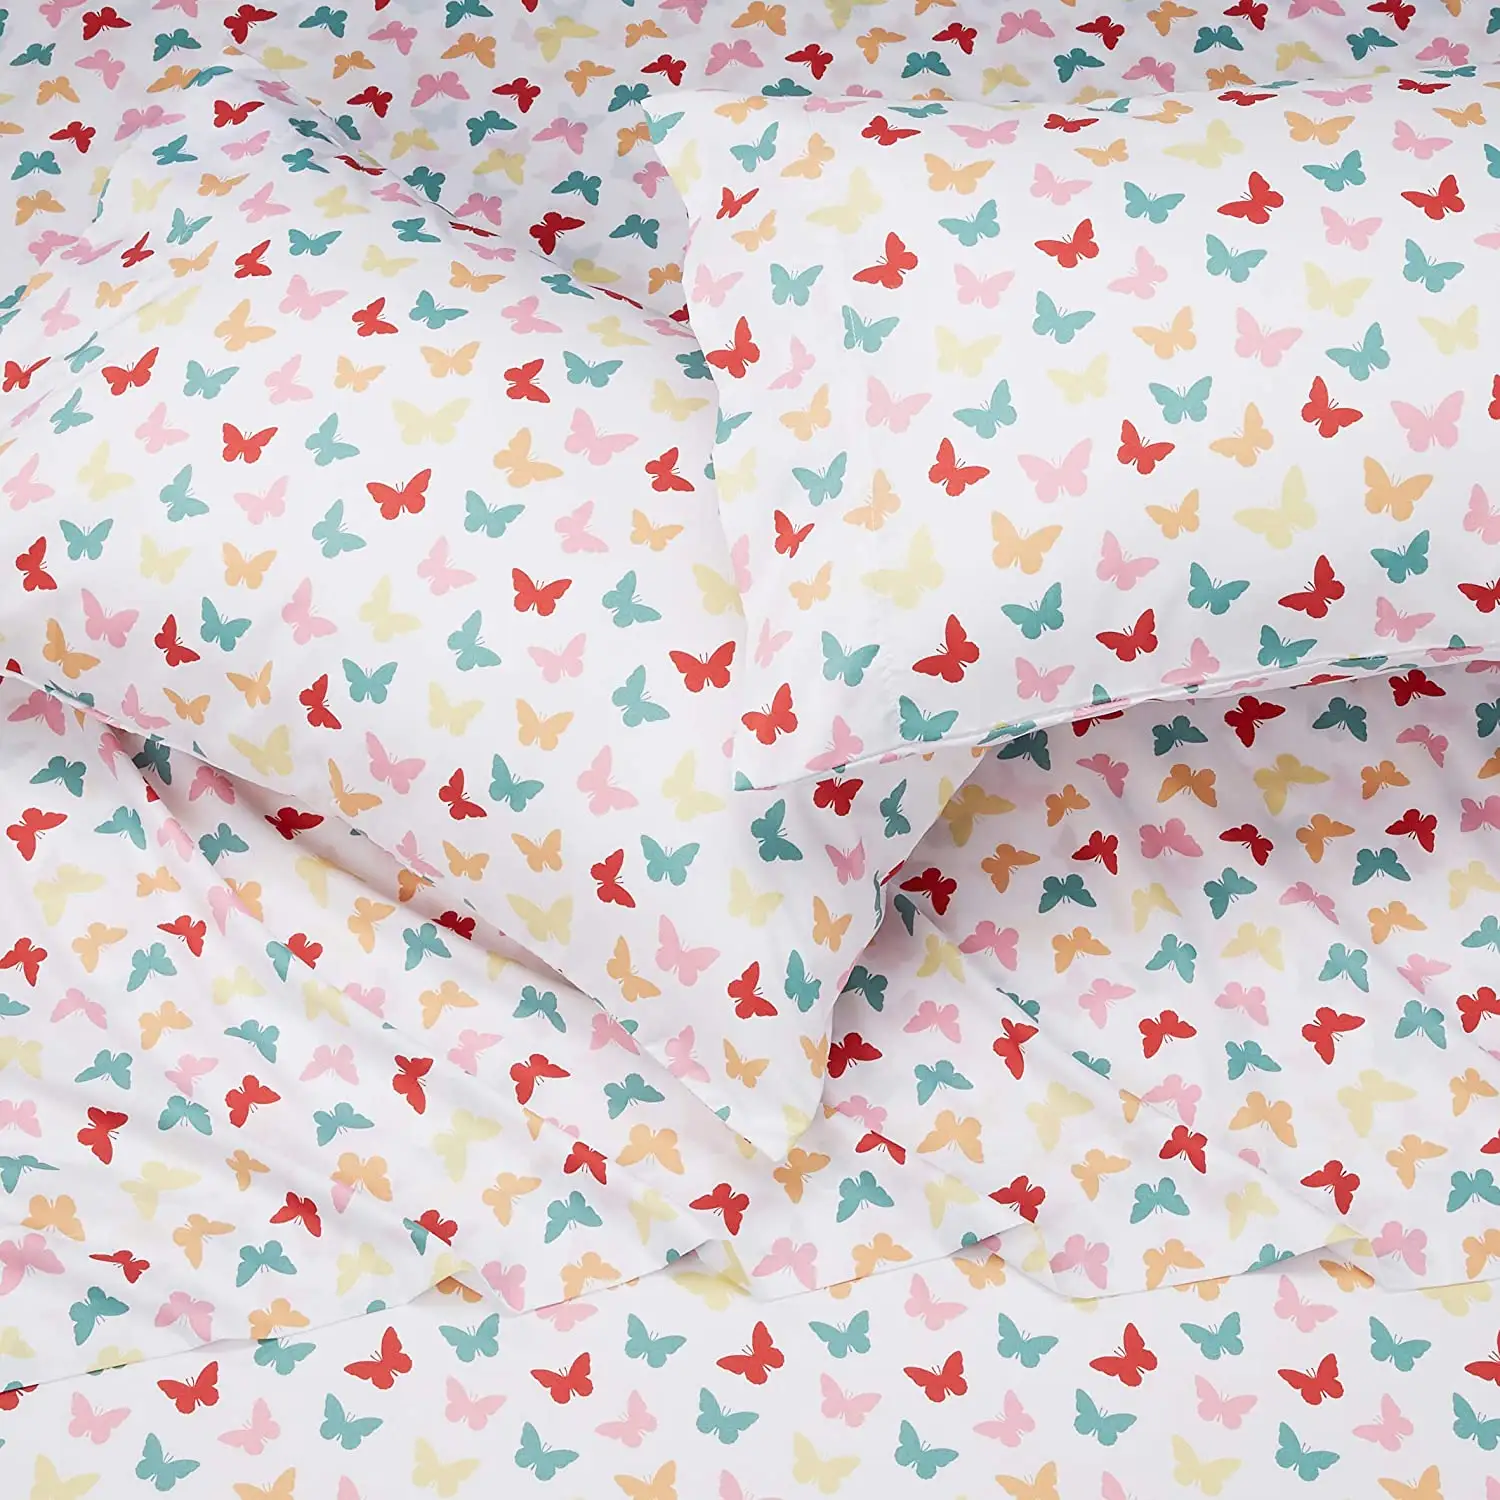 ชุดผ้าปูที่นอนเด็กซีรี่ส์1500ชุด-ชุดผ้าปูที่นอนเด็กวัยหัดเดินสีสันสดใสและสะดวกสบาย